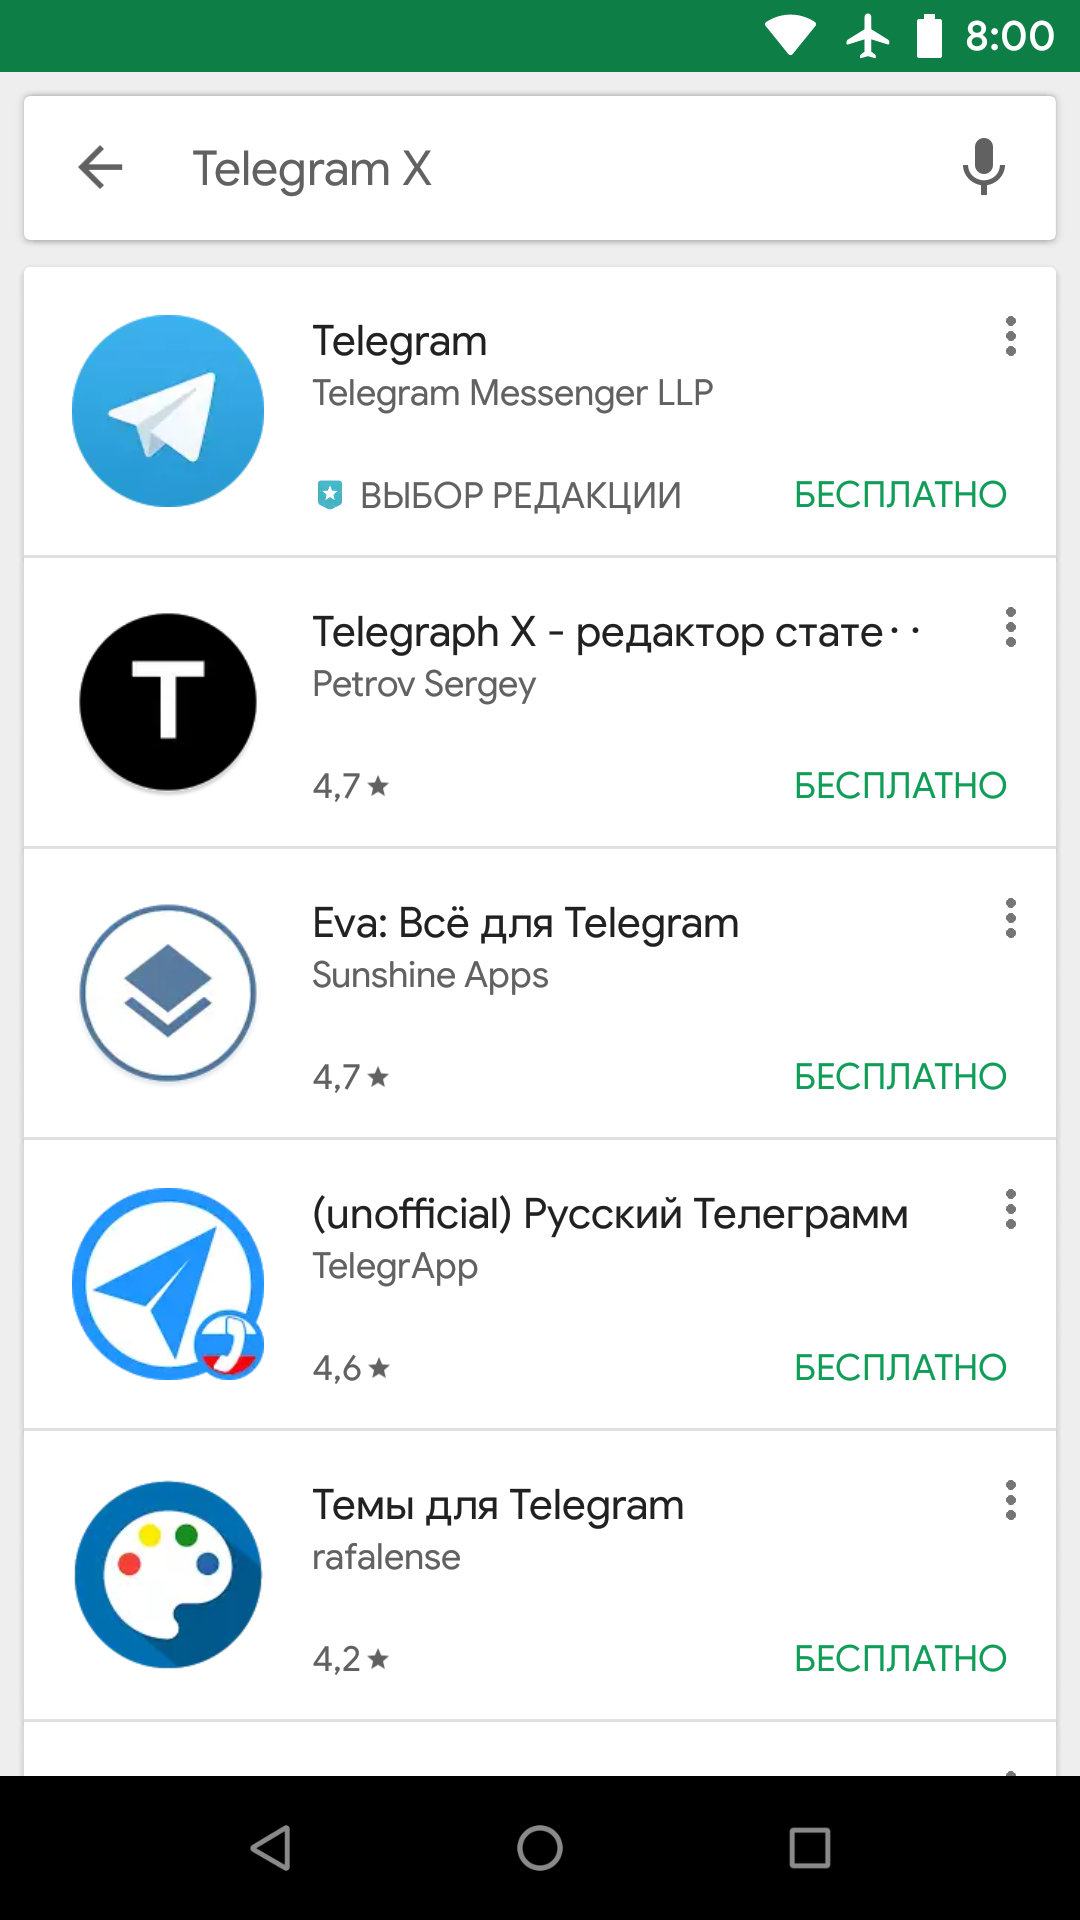 Телеграмм новая версия скачать бесплатно на русском на андроид фото 117